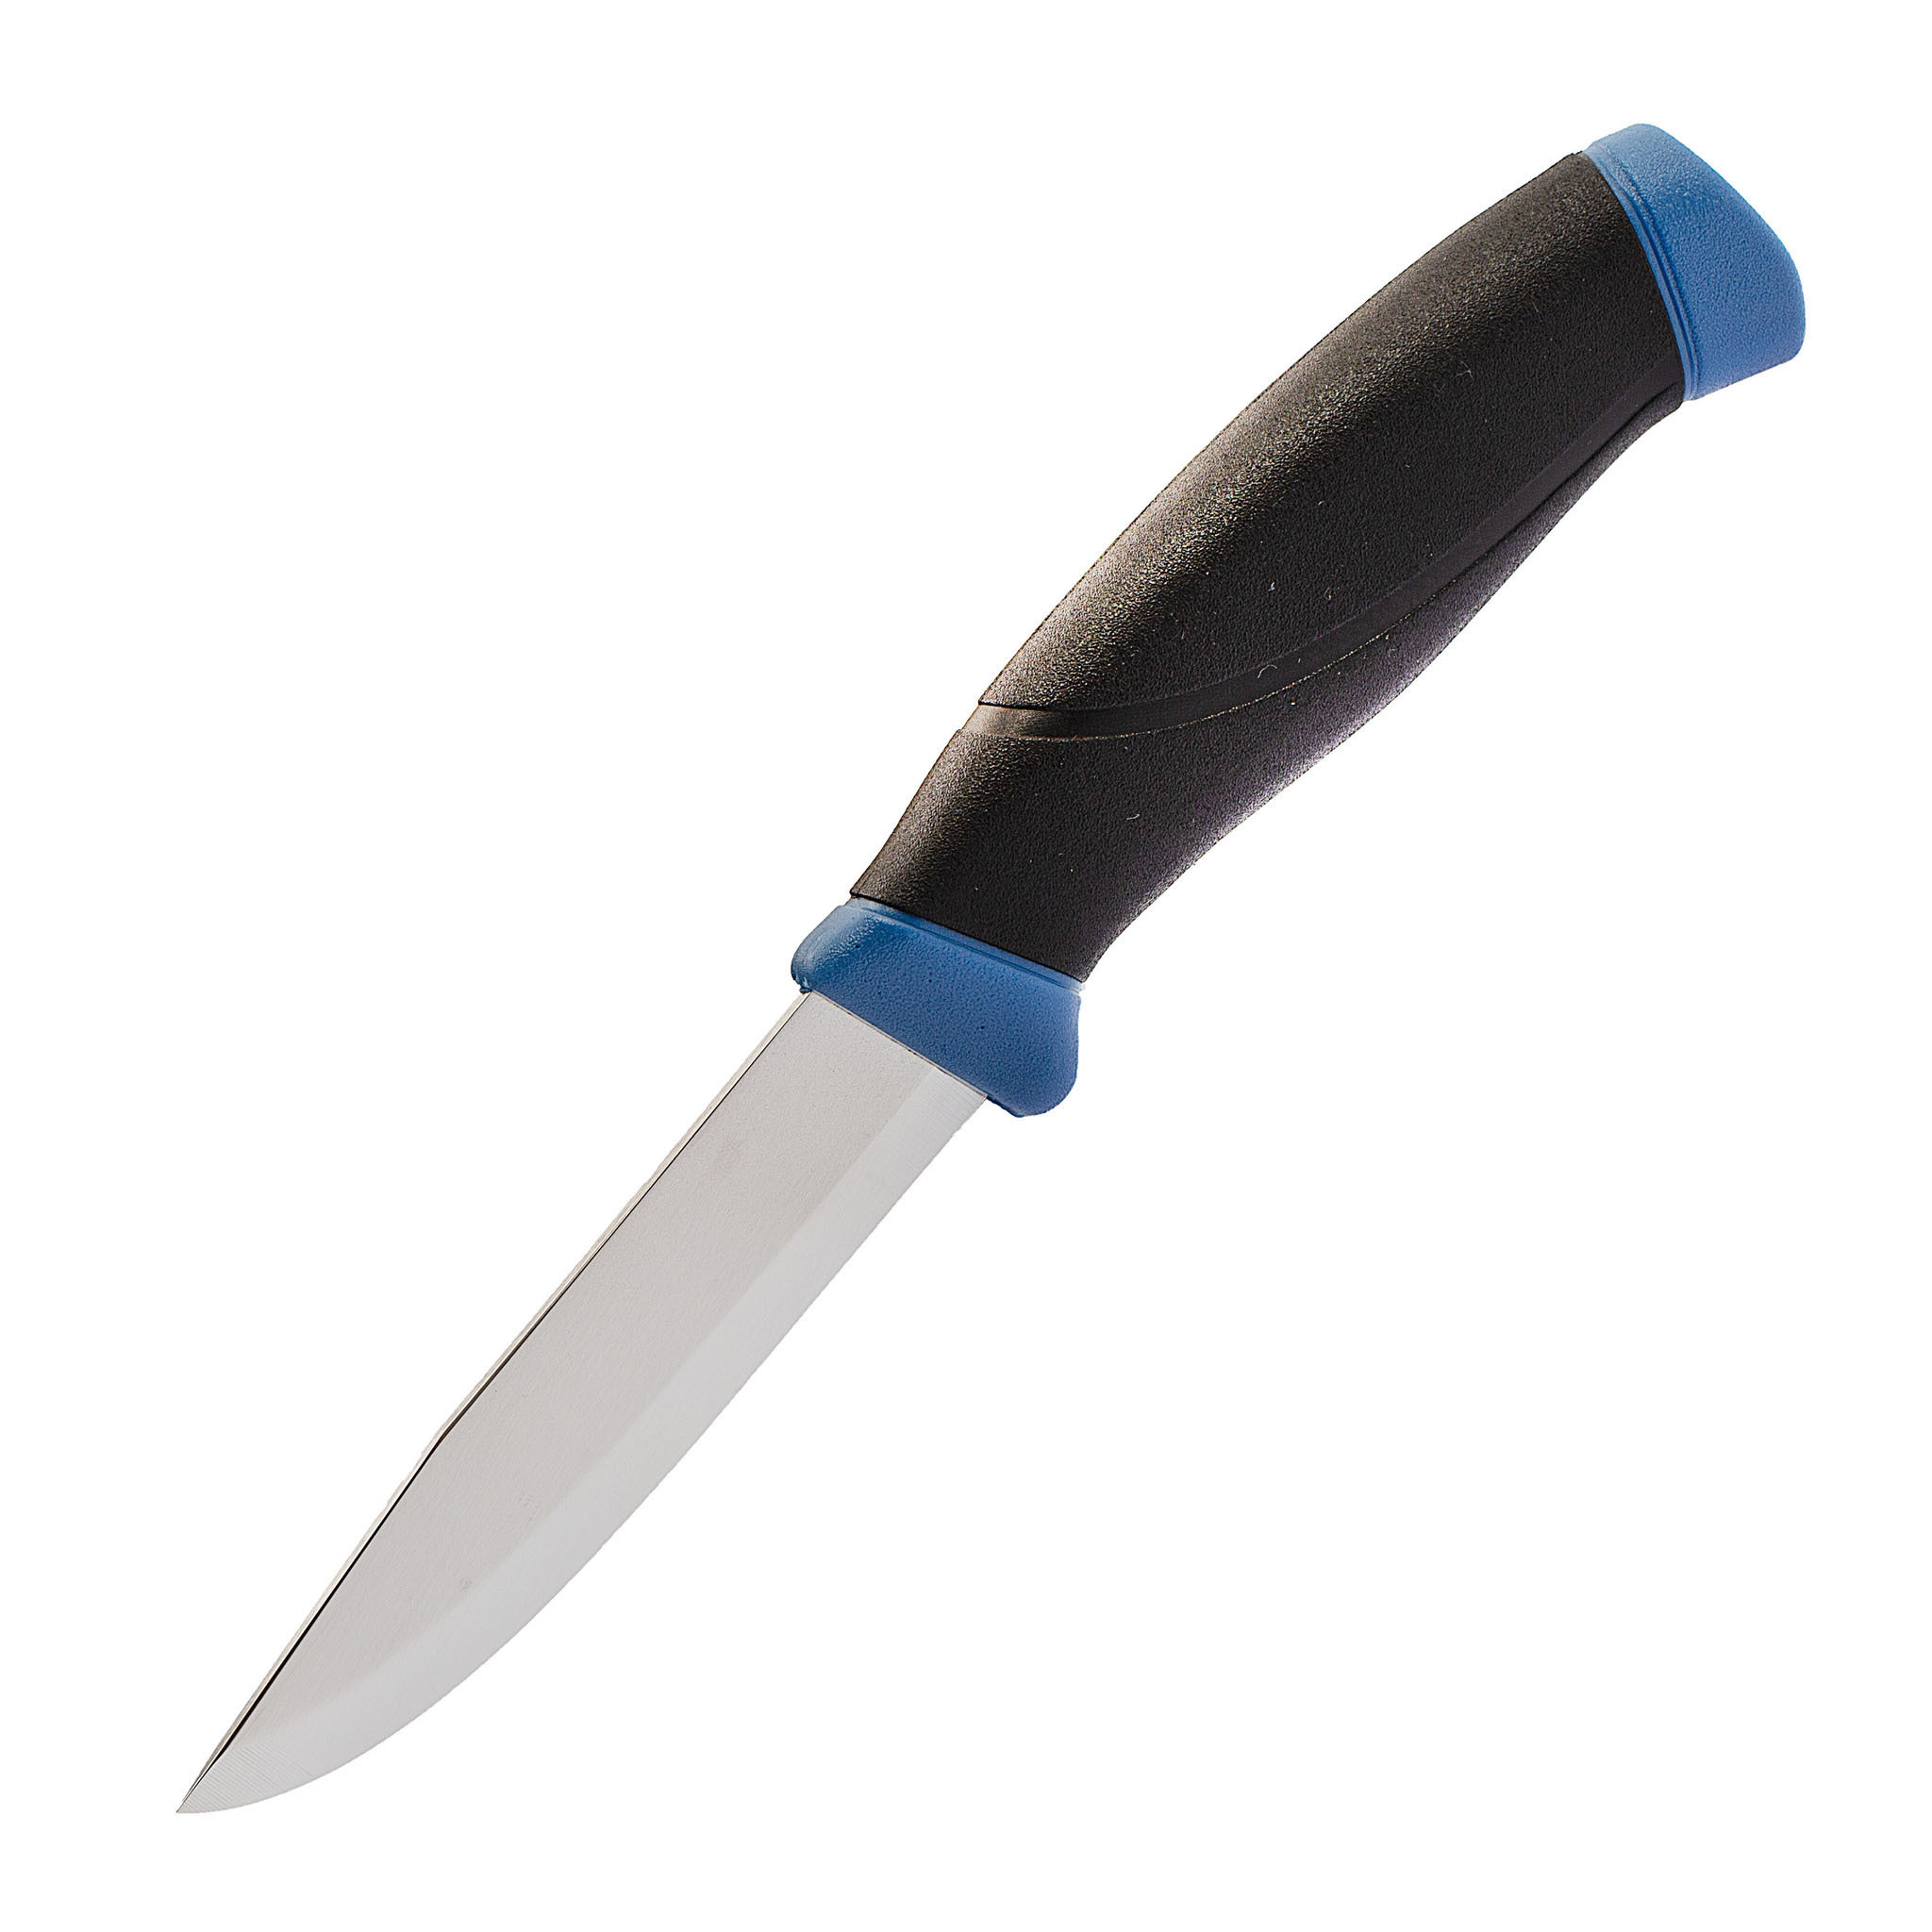 Нож с фиксированным лезвием Morakniv Companion Navy Blue, сталь Sandvik 12C27, рукоять резина/пластик - фото 1